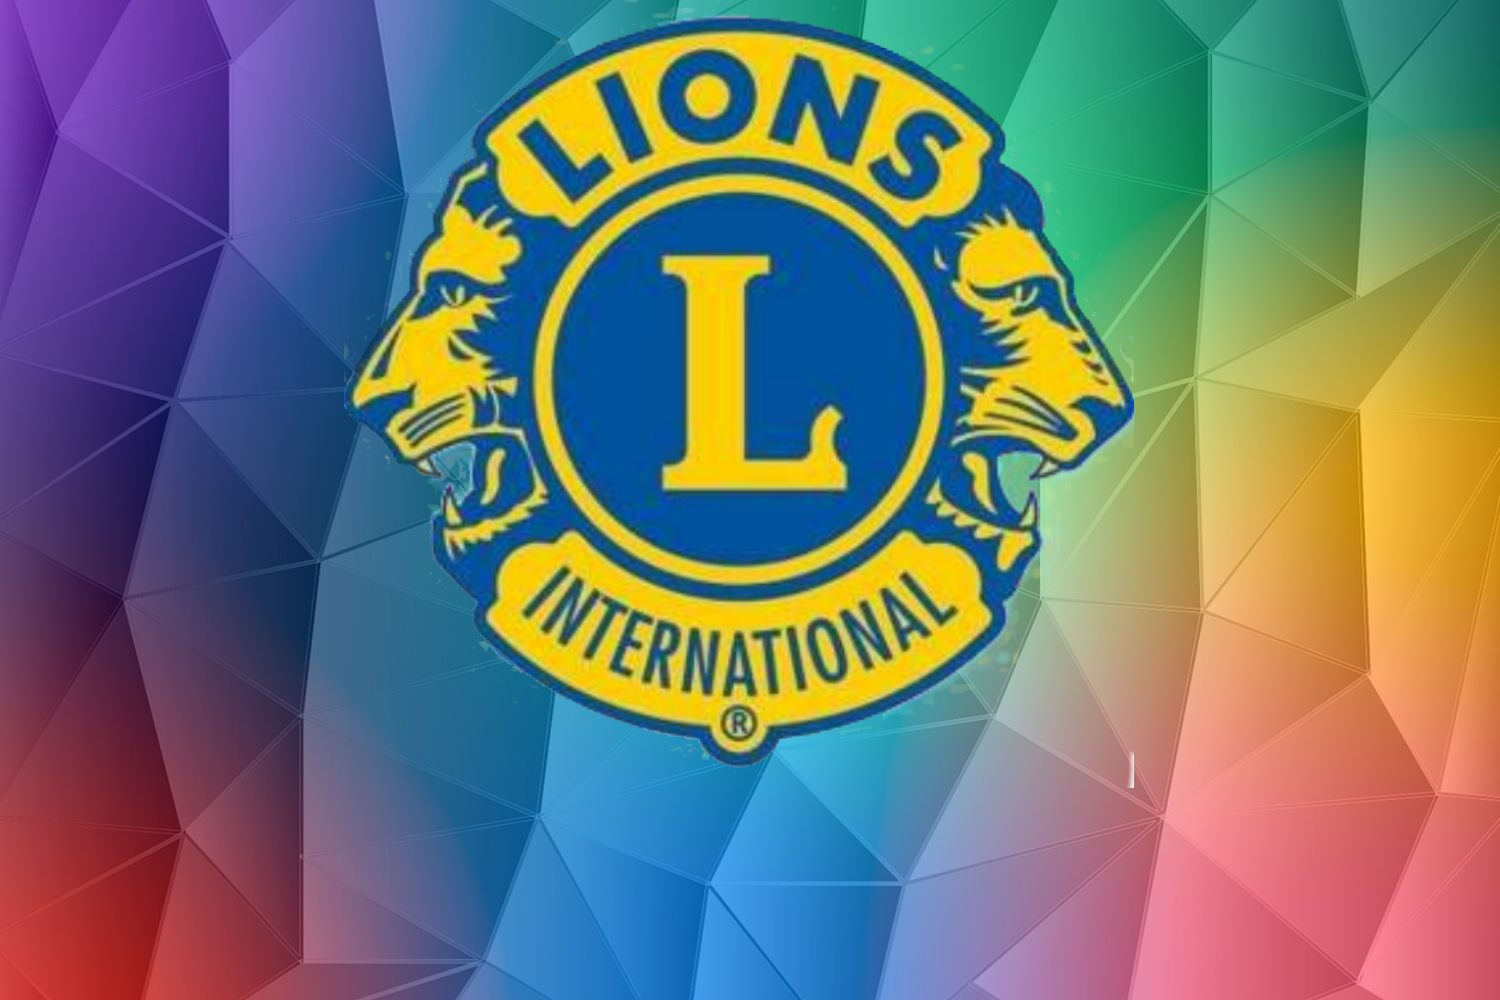 Lion Clobs International